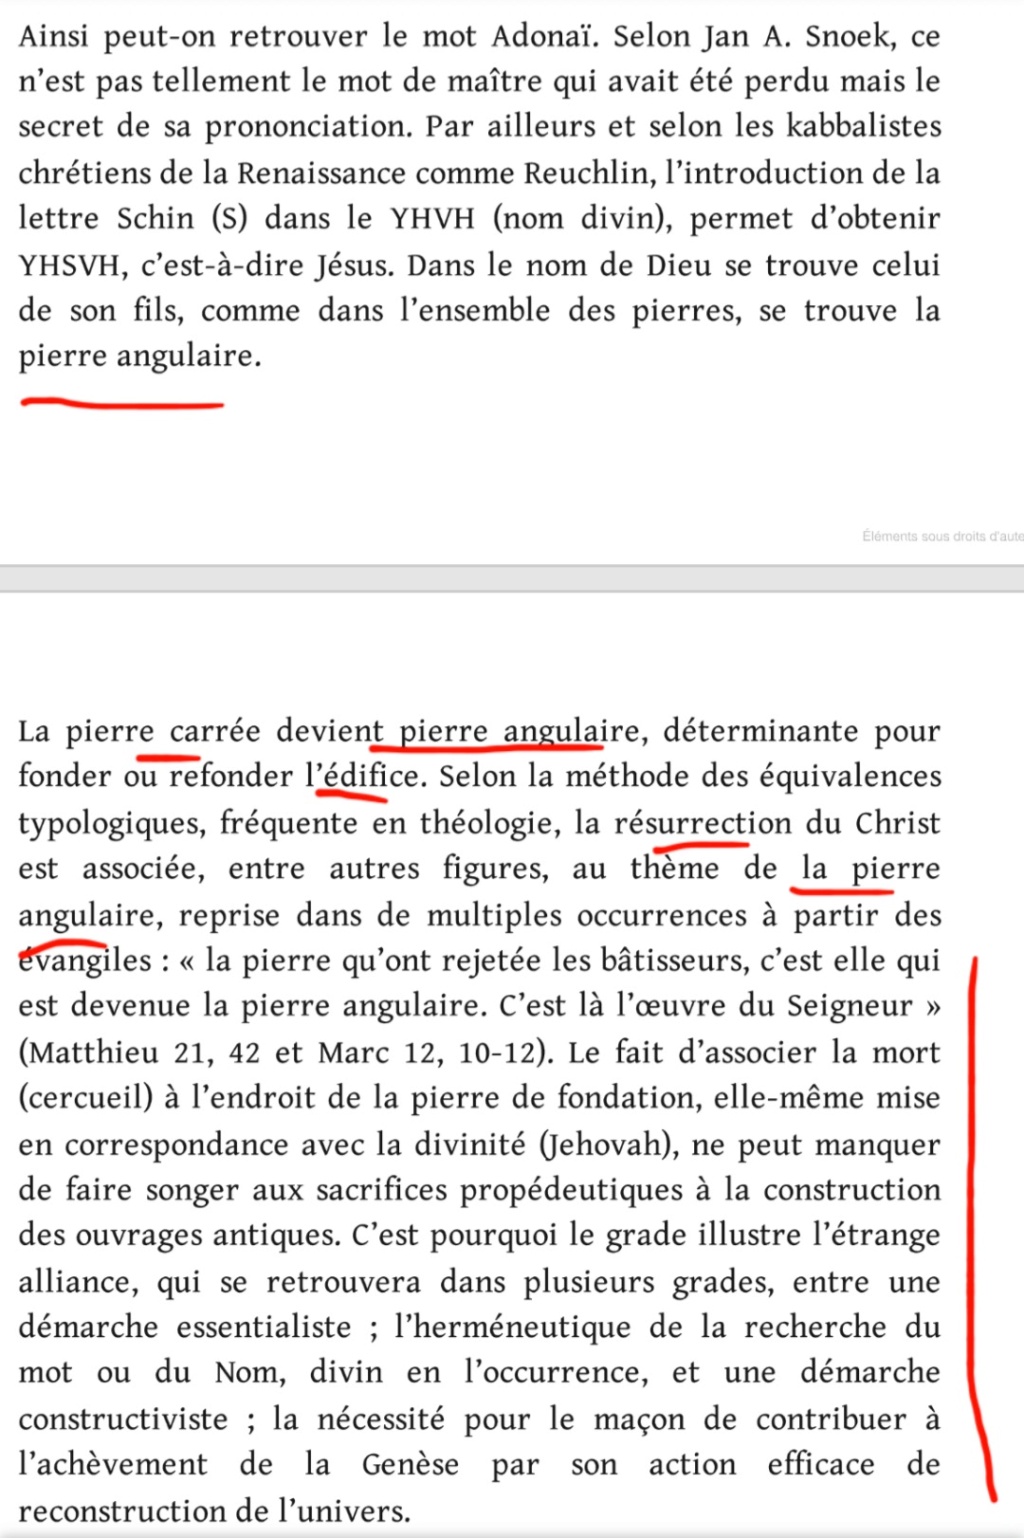 La franc-maçonnerie, la Gnose et le gnosticisme.  - Page 7 Scree680